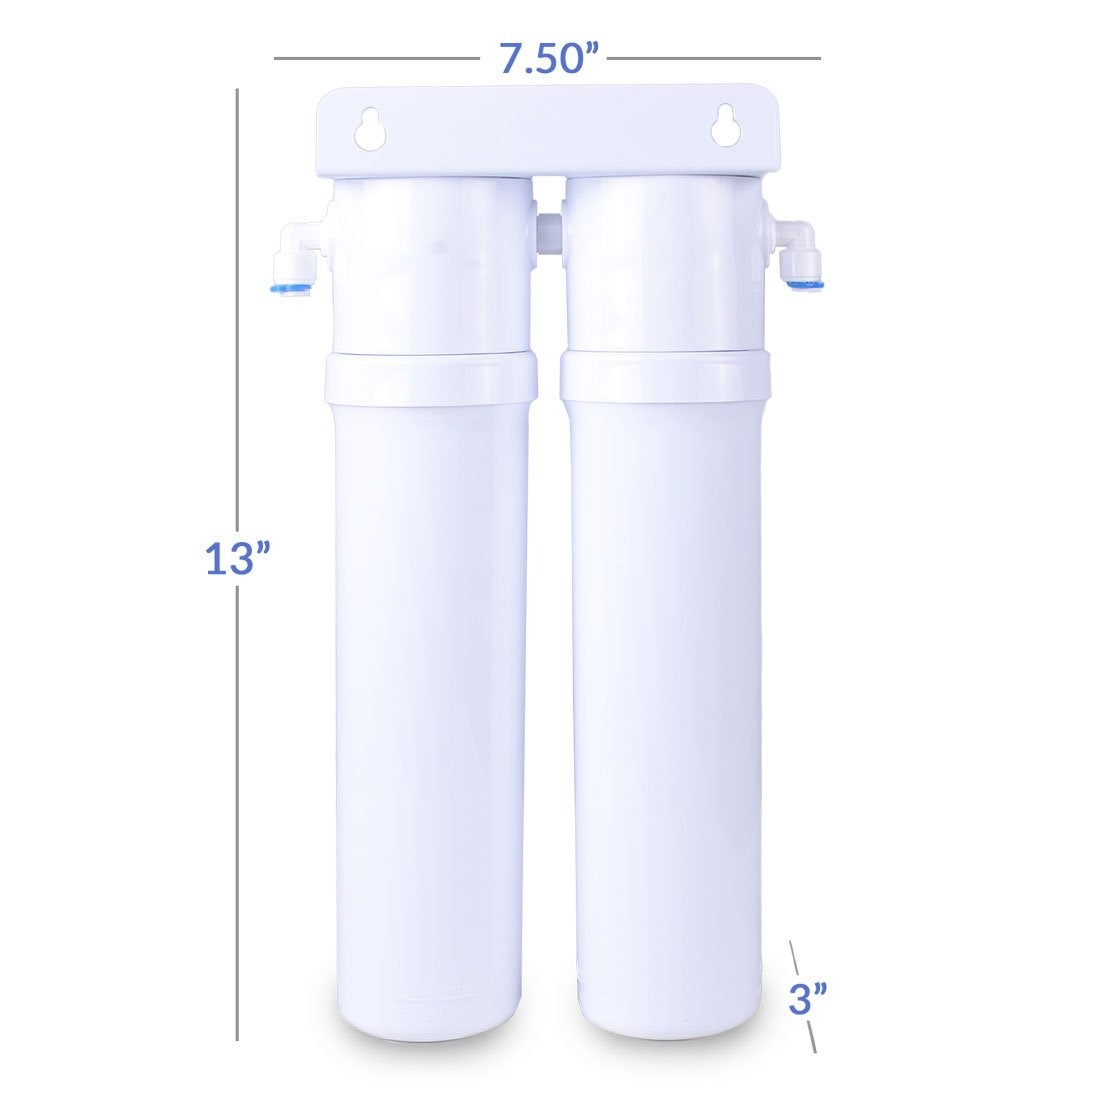 Countertop Bottleless Water Cooler Dispenser Tri Temp Hot